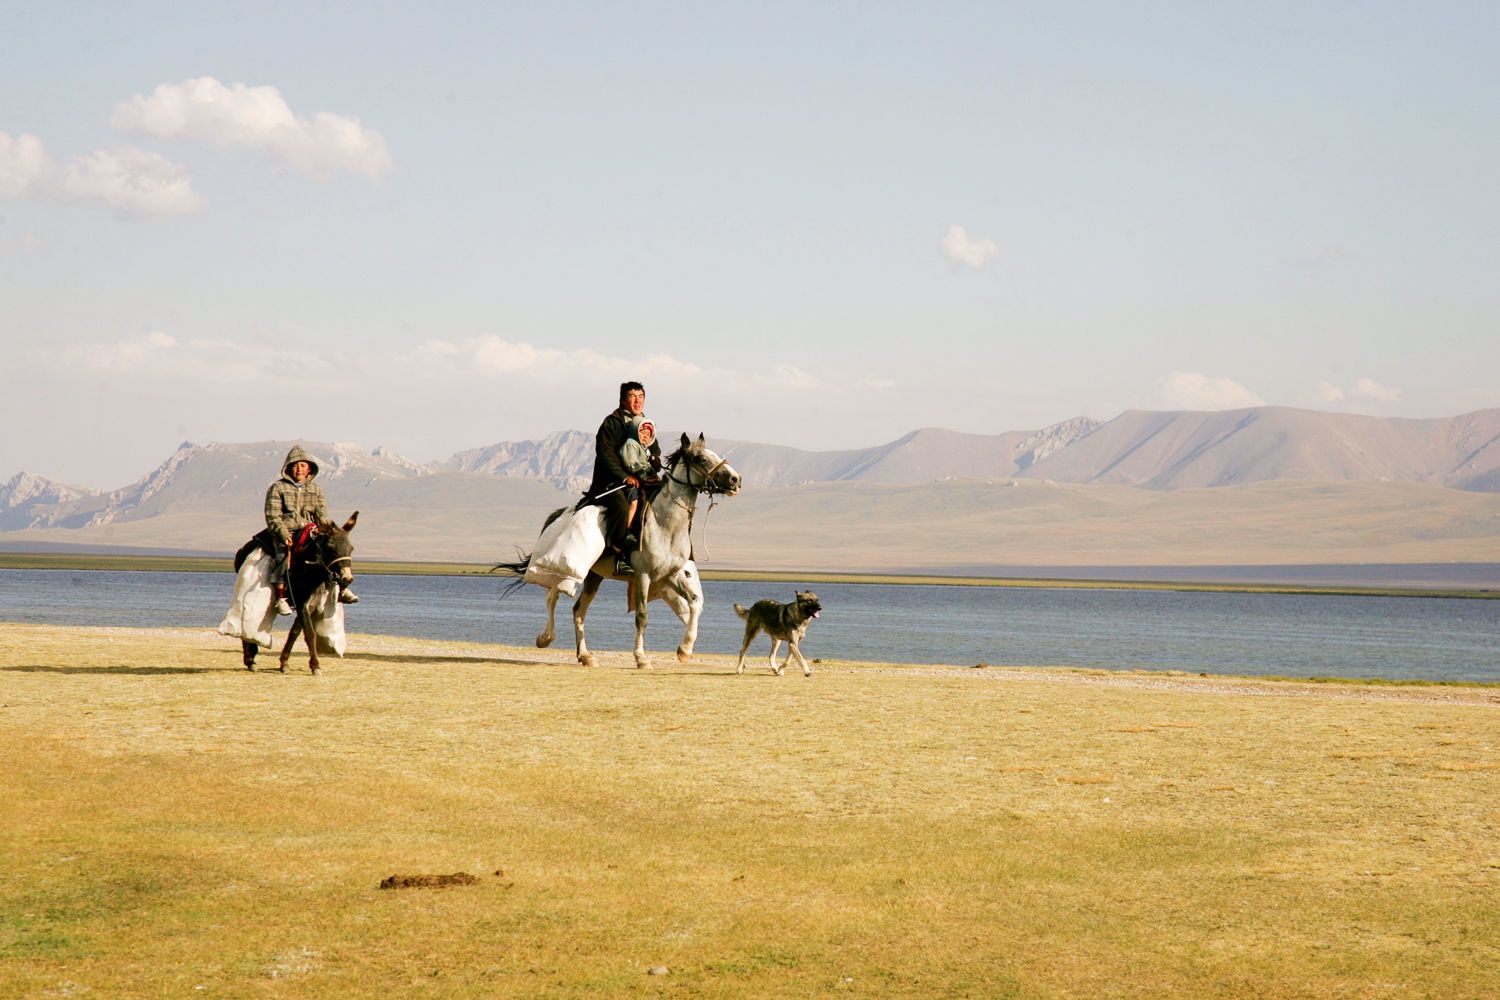 Kyrgyz people